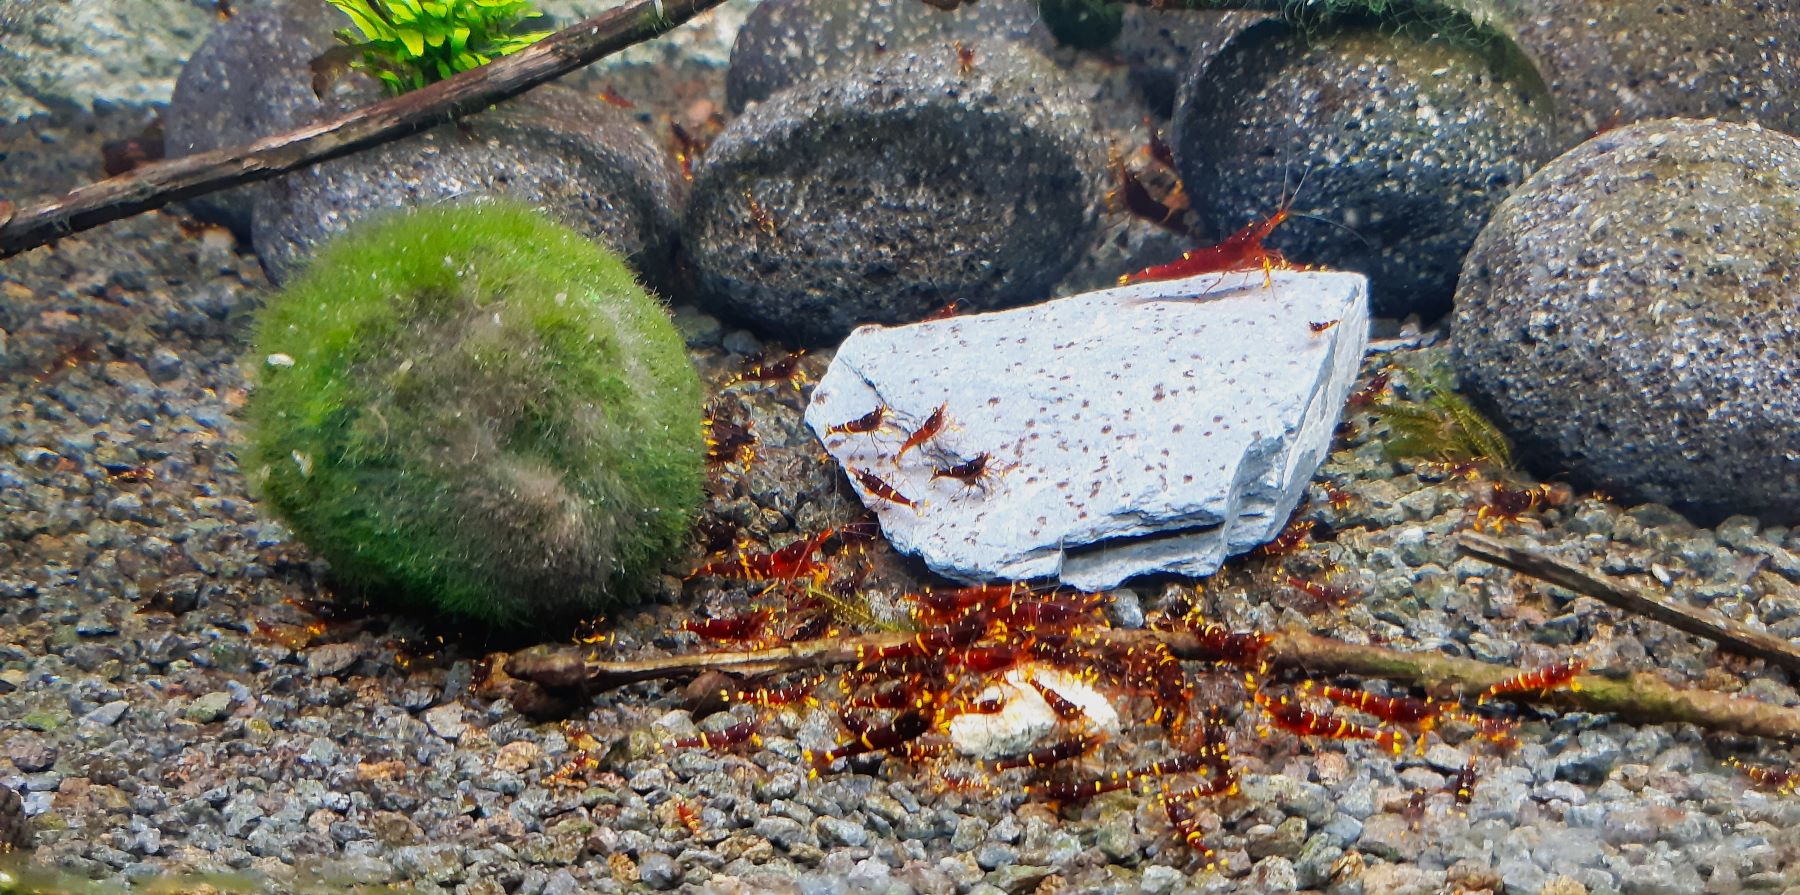 Peter Baert - Sulawesi shrimps